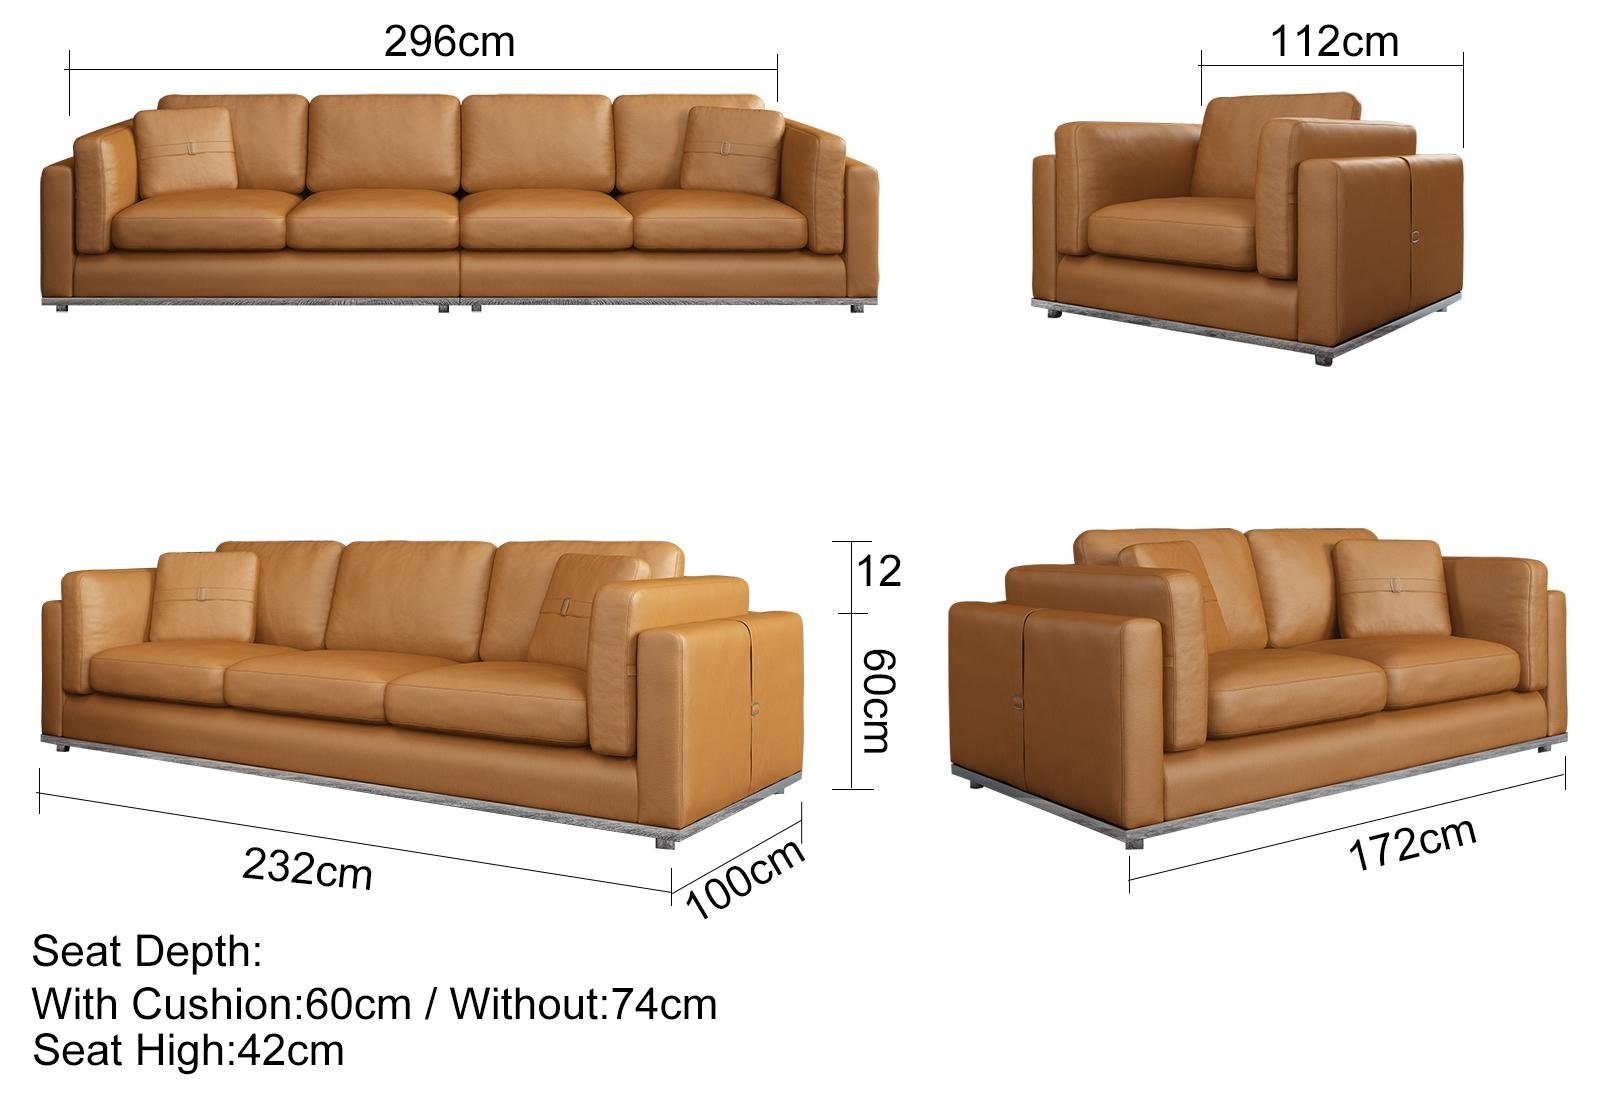 JVmoebel 3-Sitzer, Modern Dreisitzer Sofa Couchen 3 Sitzer Braun